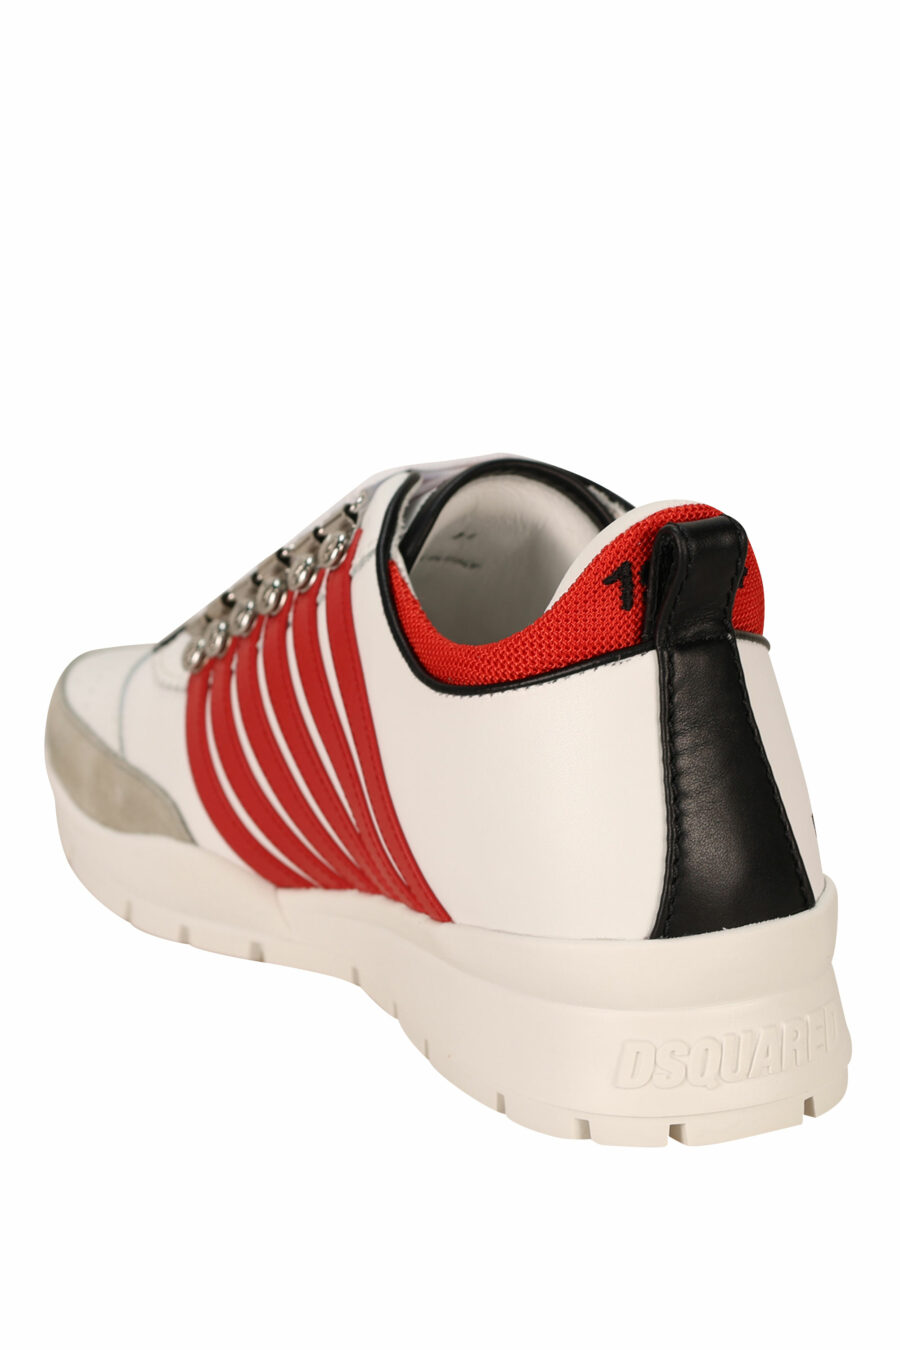 Zapatillas blancas con lineas rojas y suela blanca - 8055777300985 3